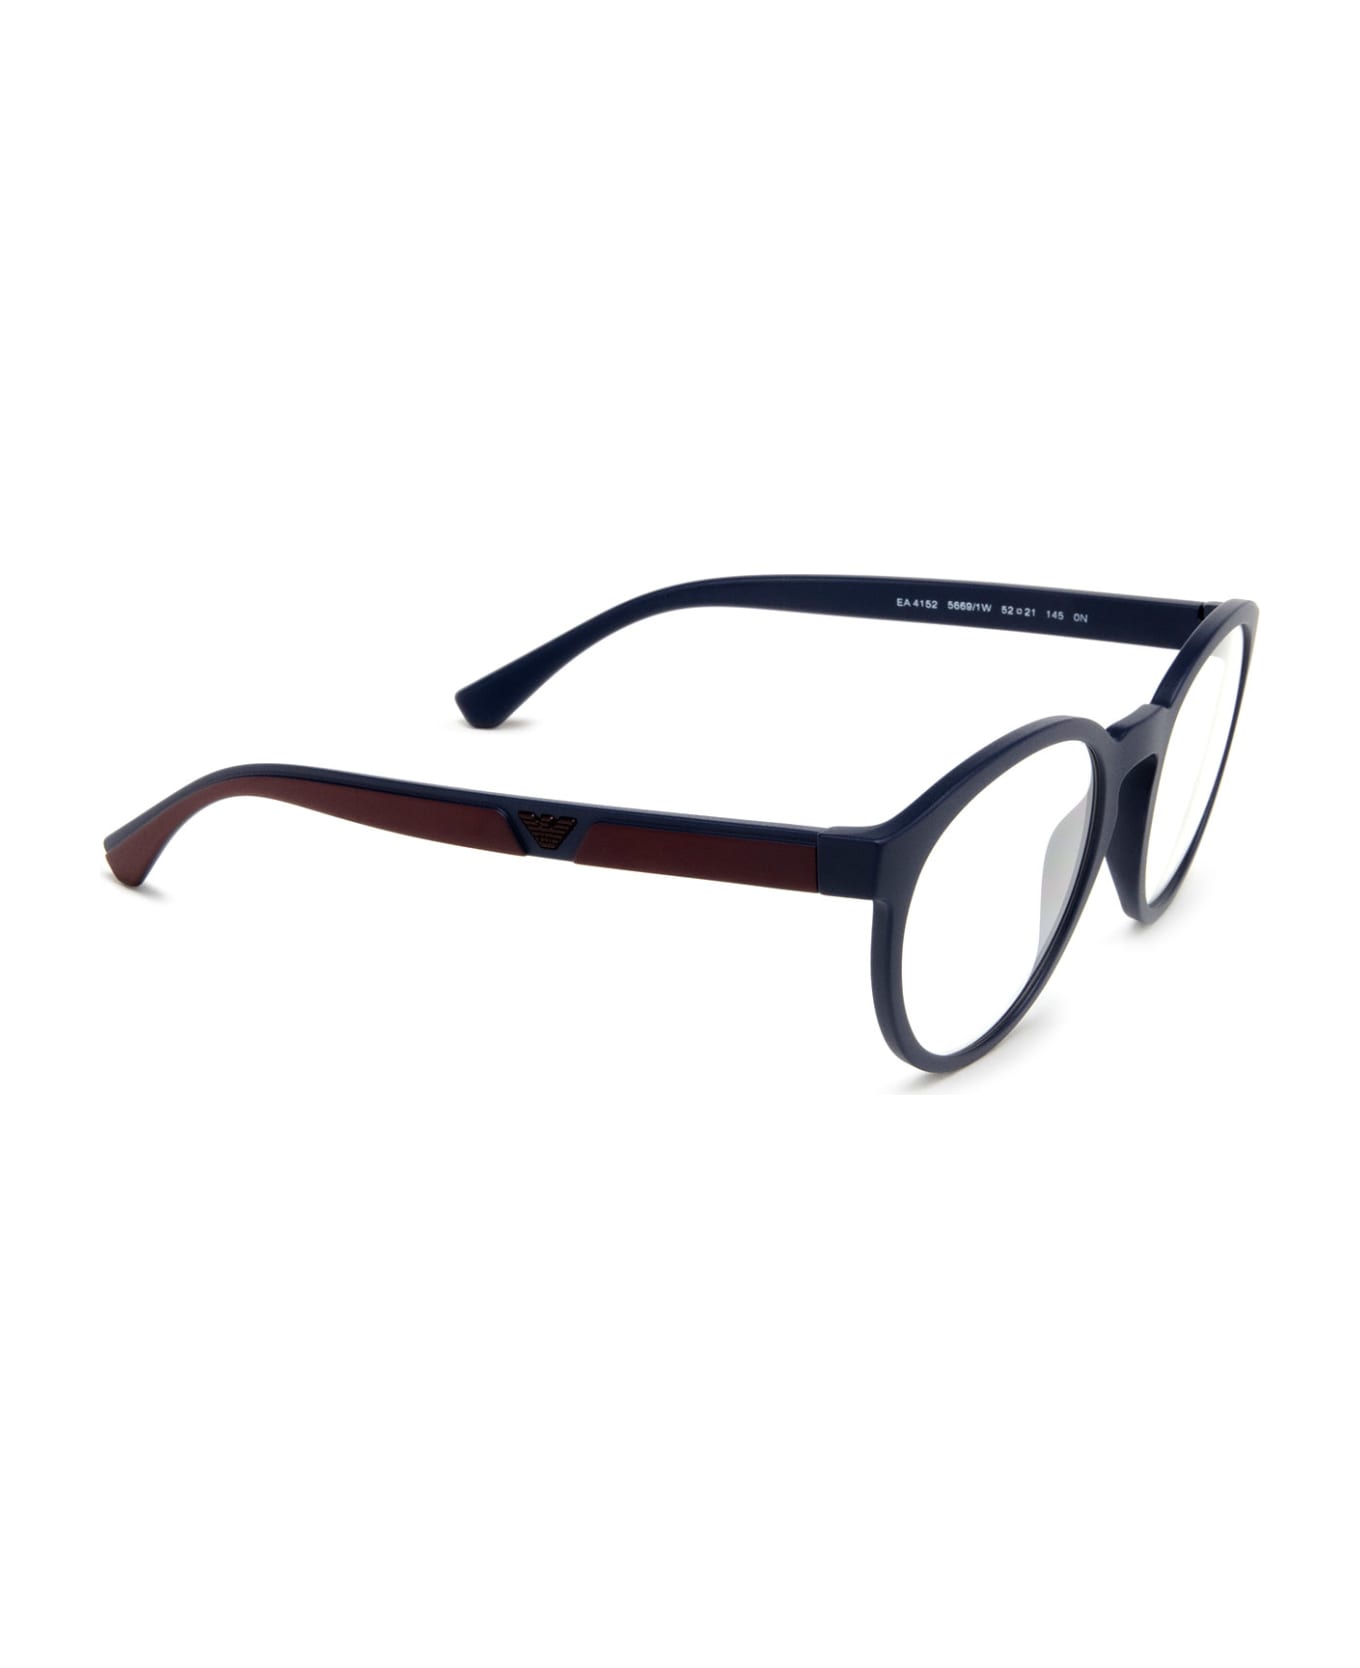 Emporio Armani Ea4152 Matte Blue Sunglasses - Matte Blue